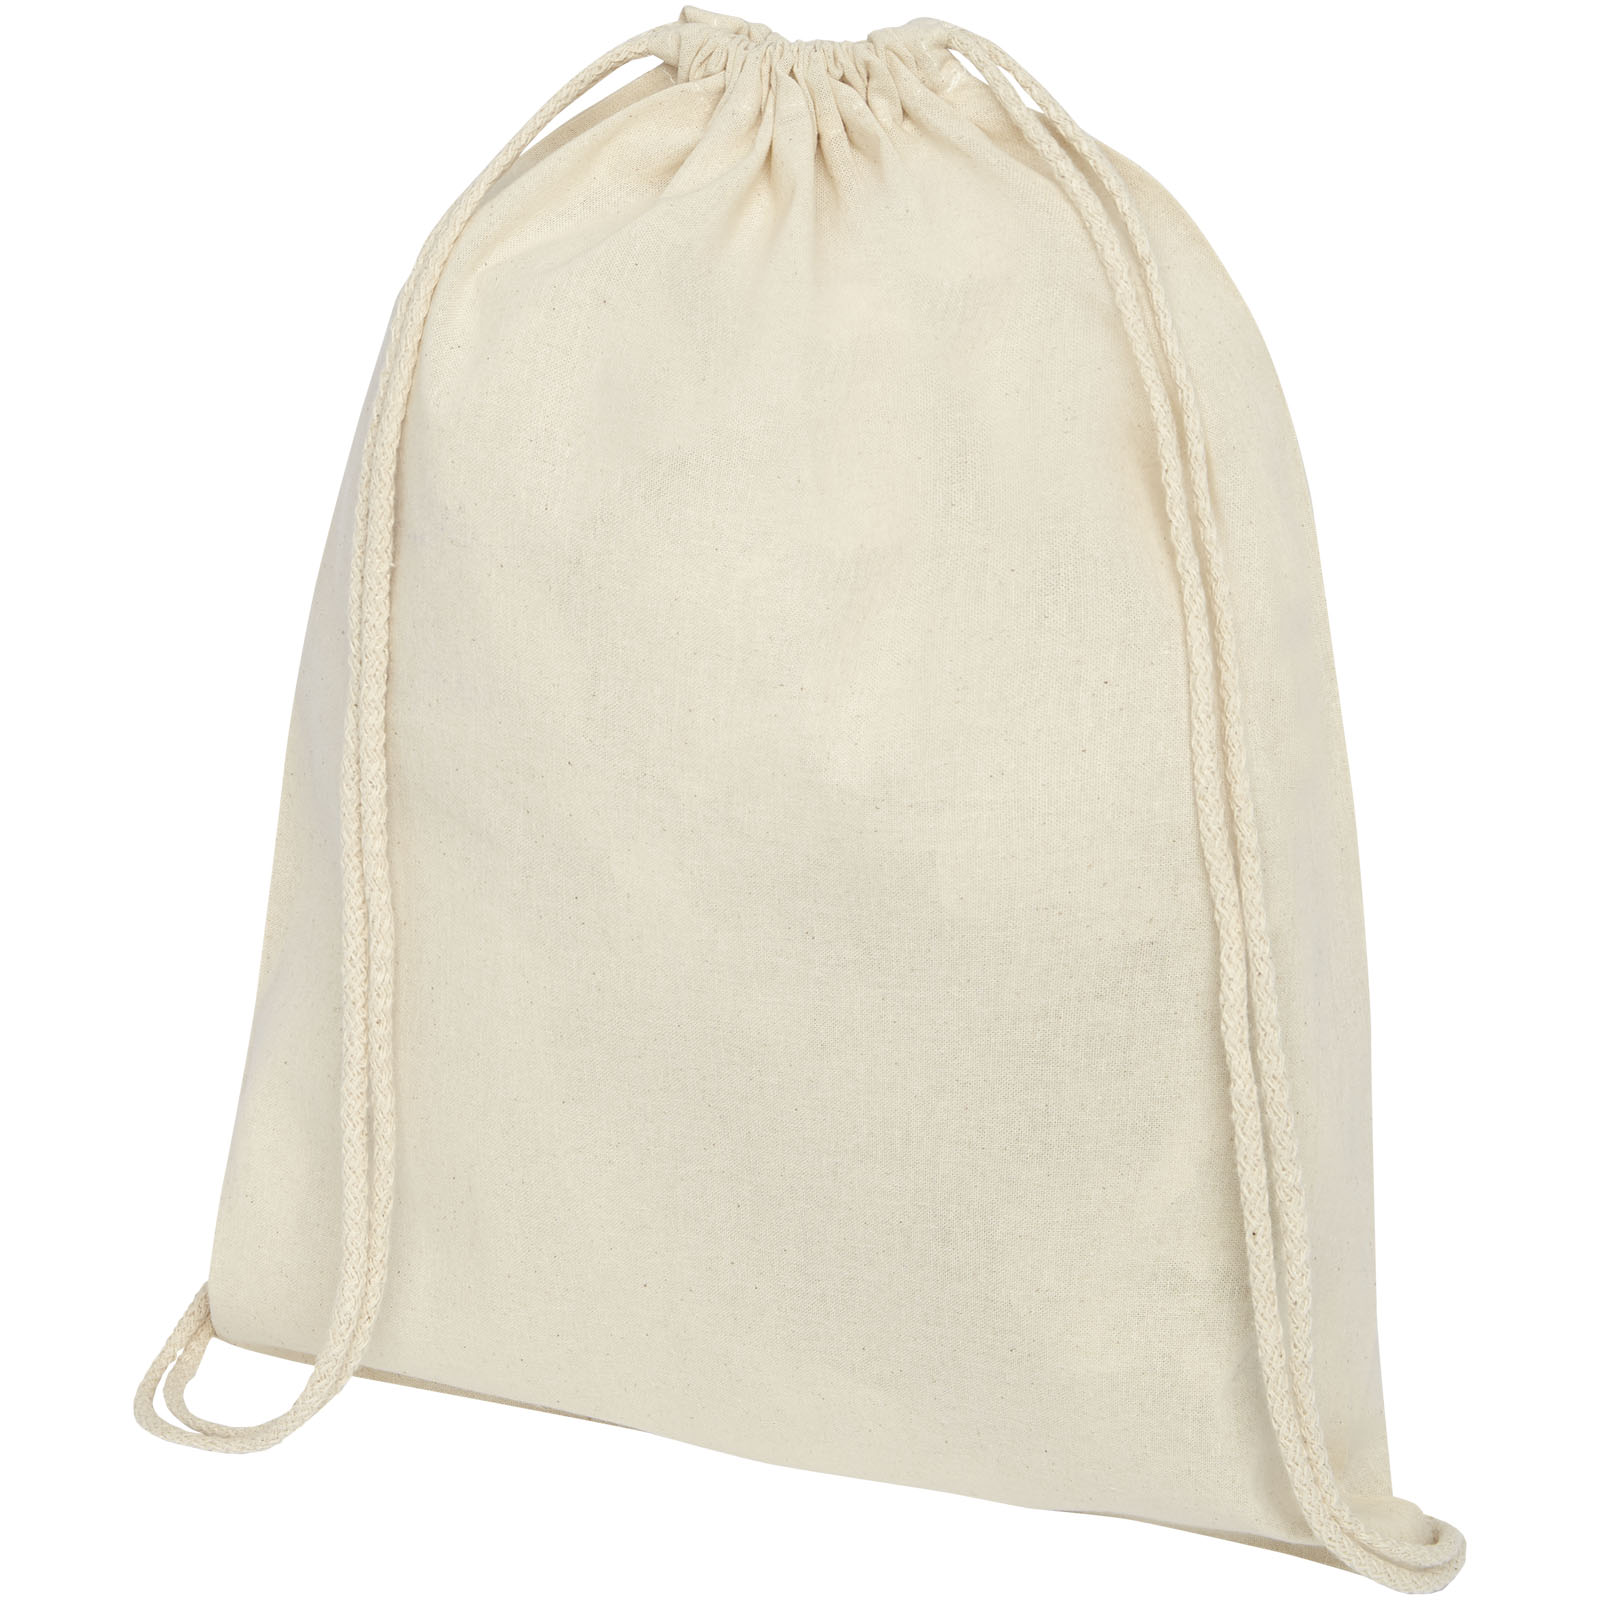 Advertising Drawstring Bags - Oregon 100 g/m² cotton drawstring bag 5L